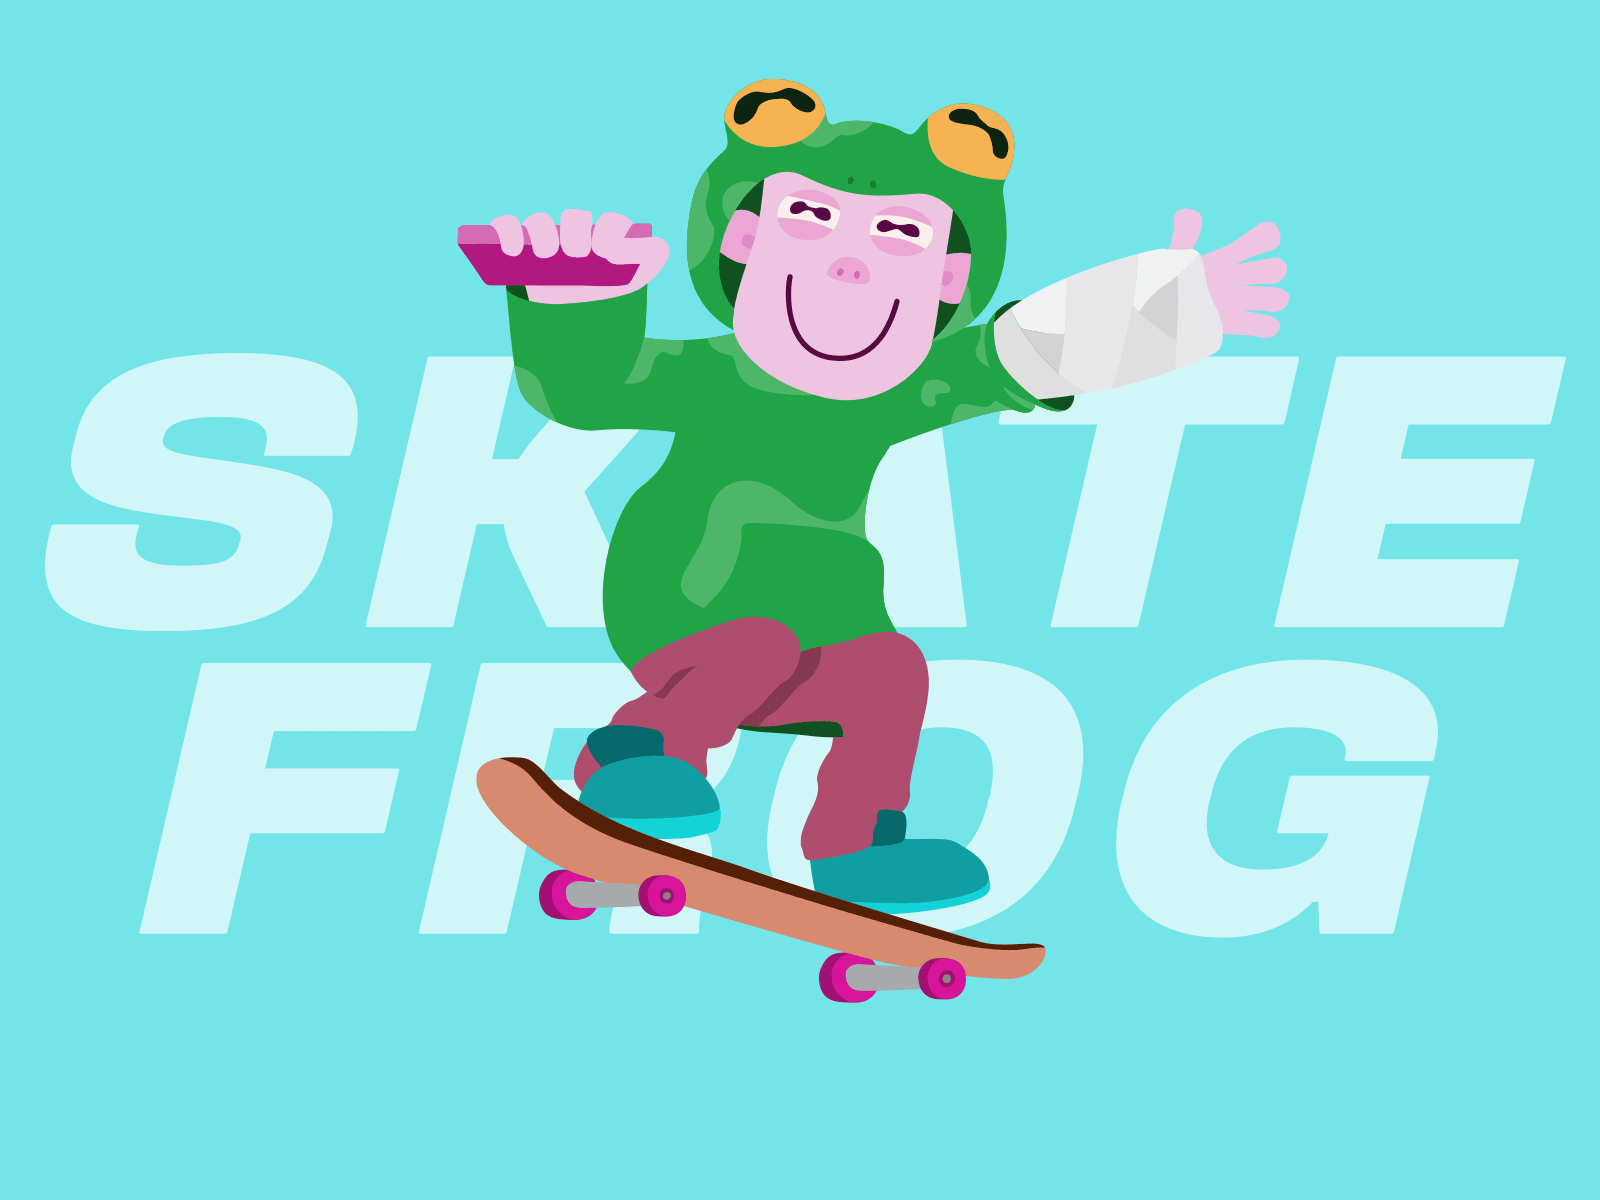 Skate Frog